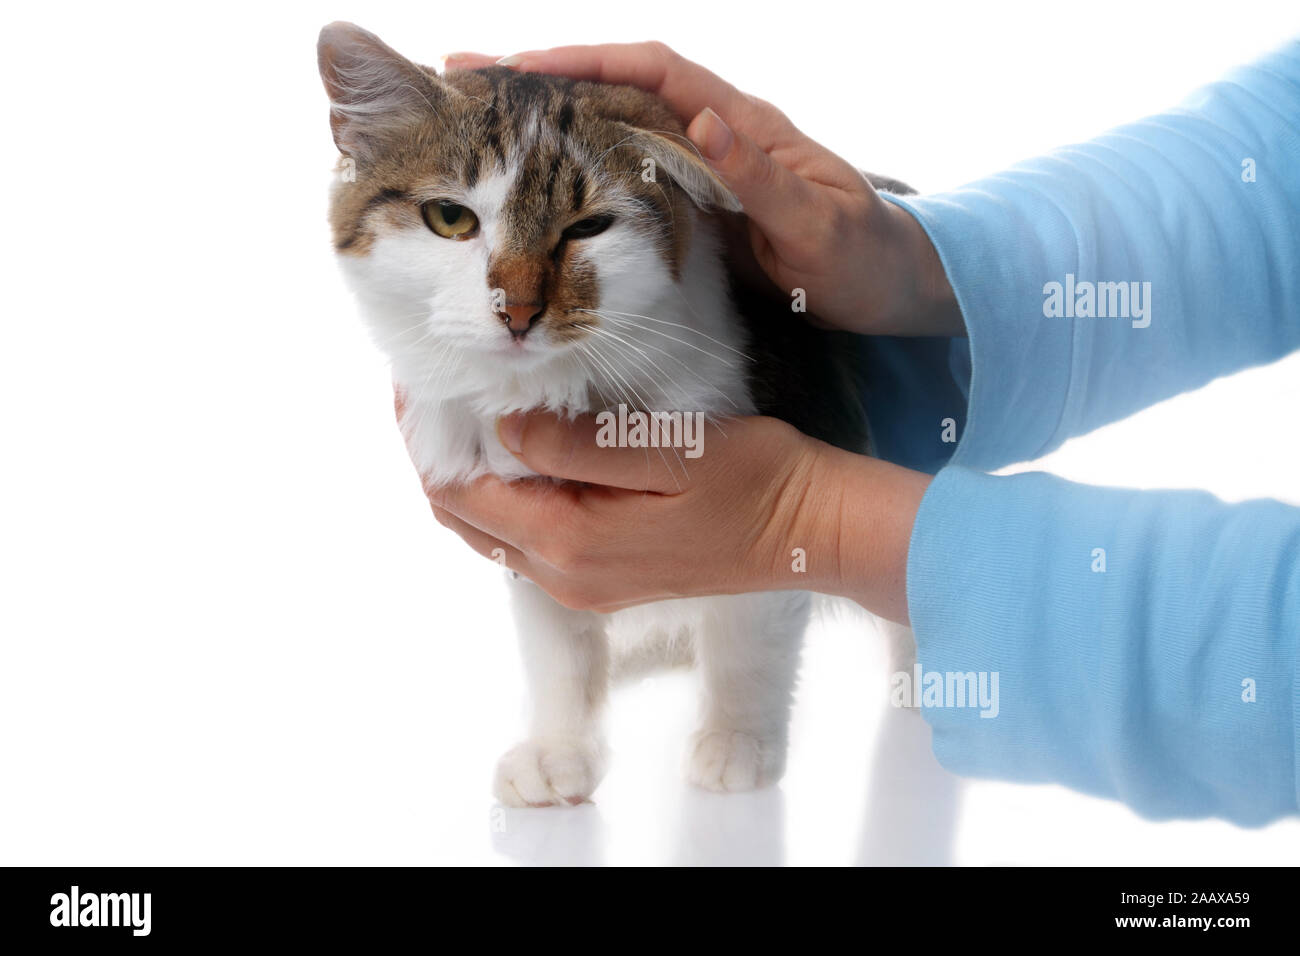 La zoothérapie avec le chat - gros plan sur les mains qui caresse le chat Banque D'Images